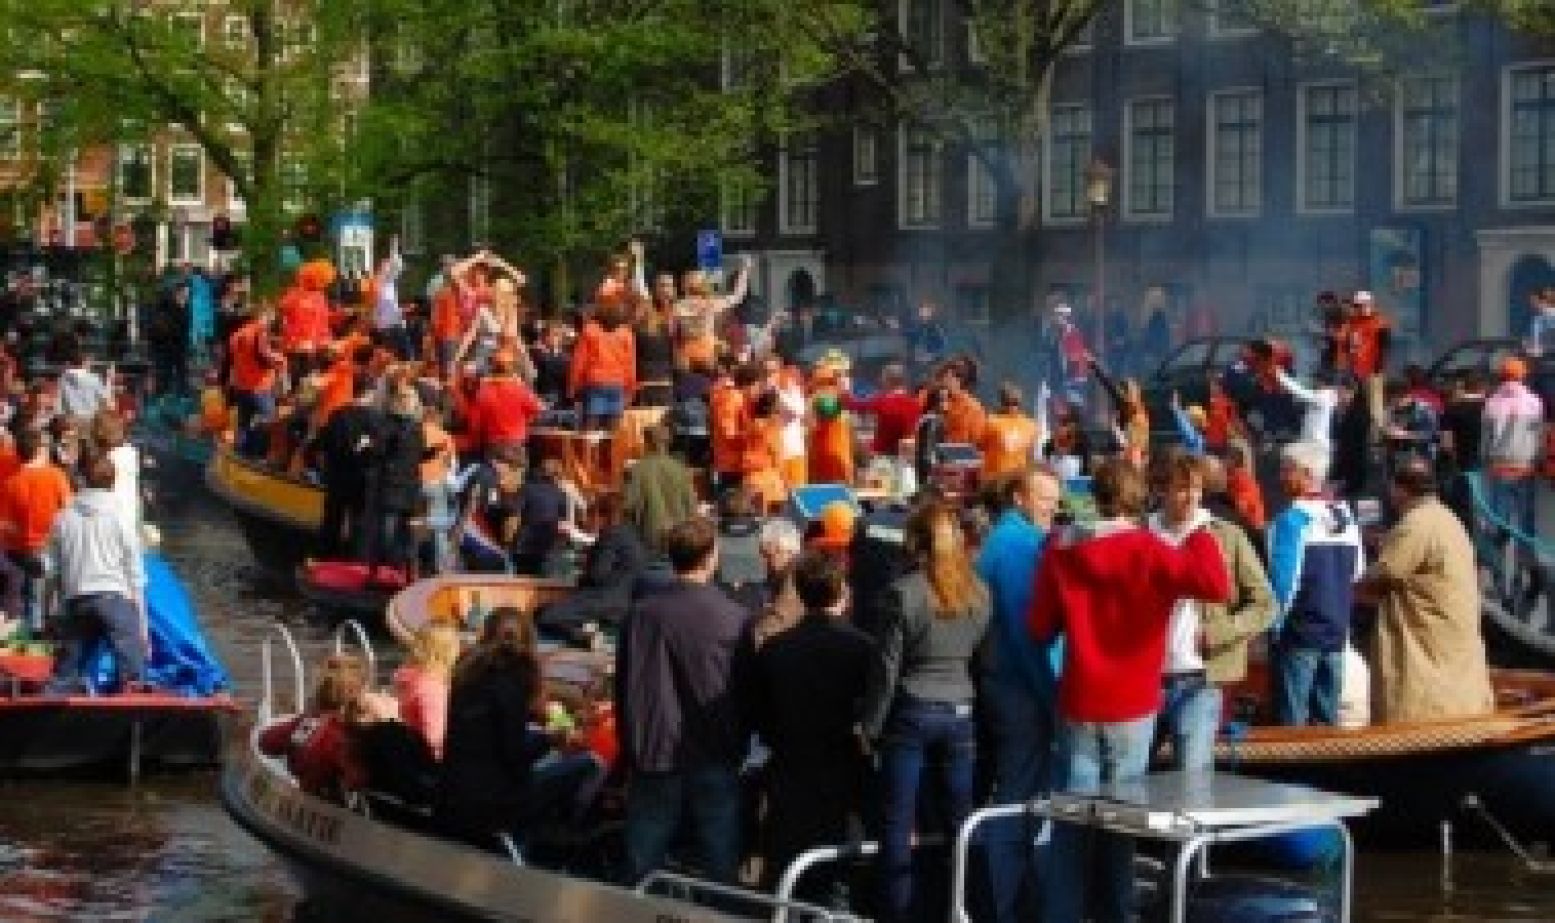 De grachten van Amsterdam kleuren oranje. Hoezee, voor onze koning! Foto:  Flickr/EDieters   CC BY 2.0 